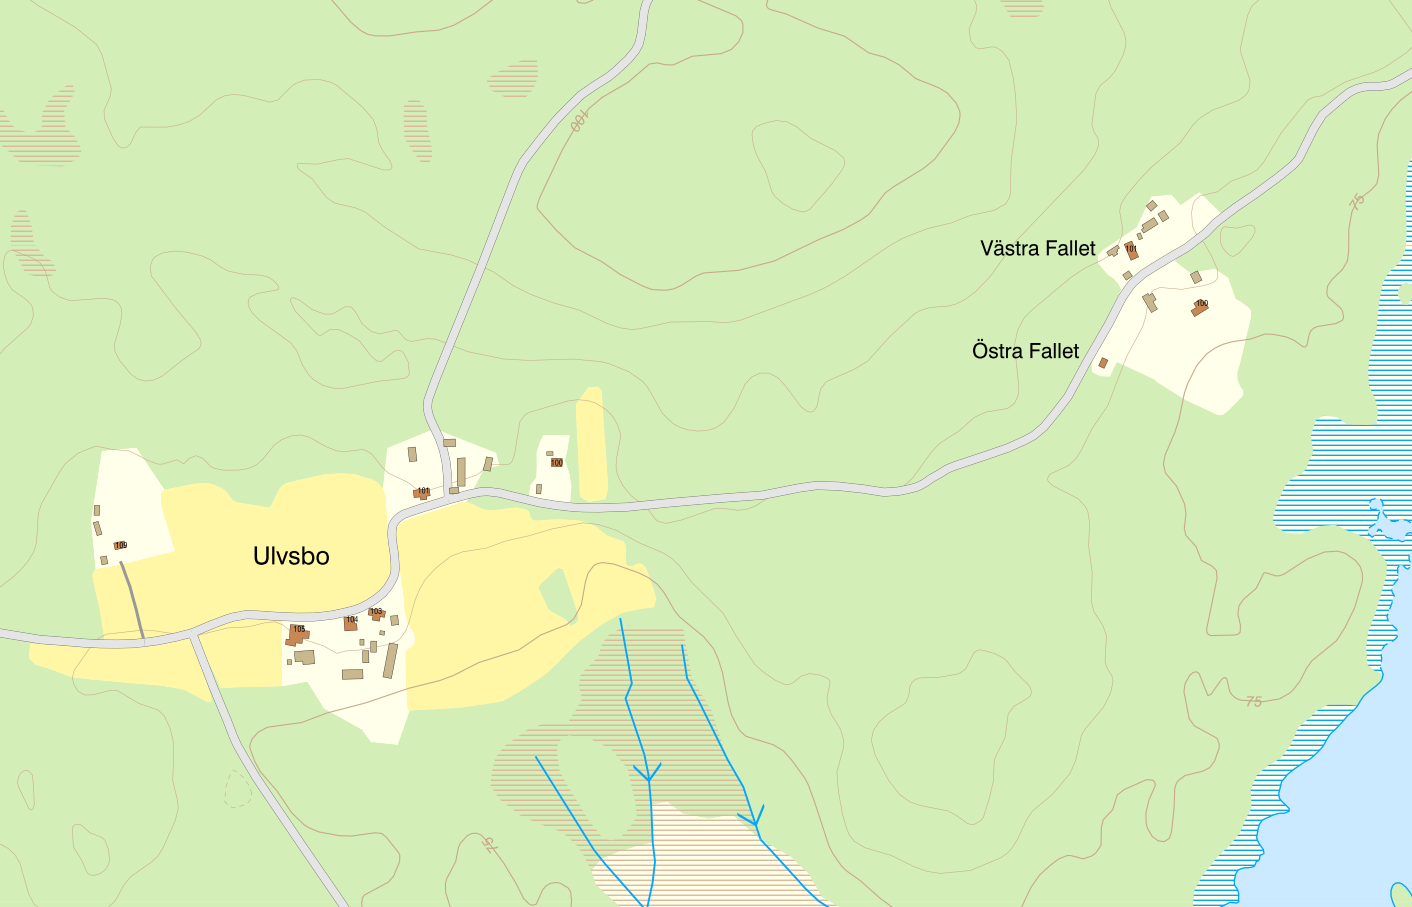 Kartbild över Ulvsbo och Östra fallet